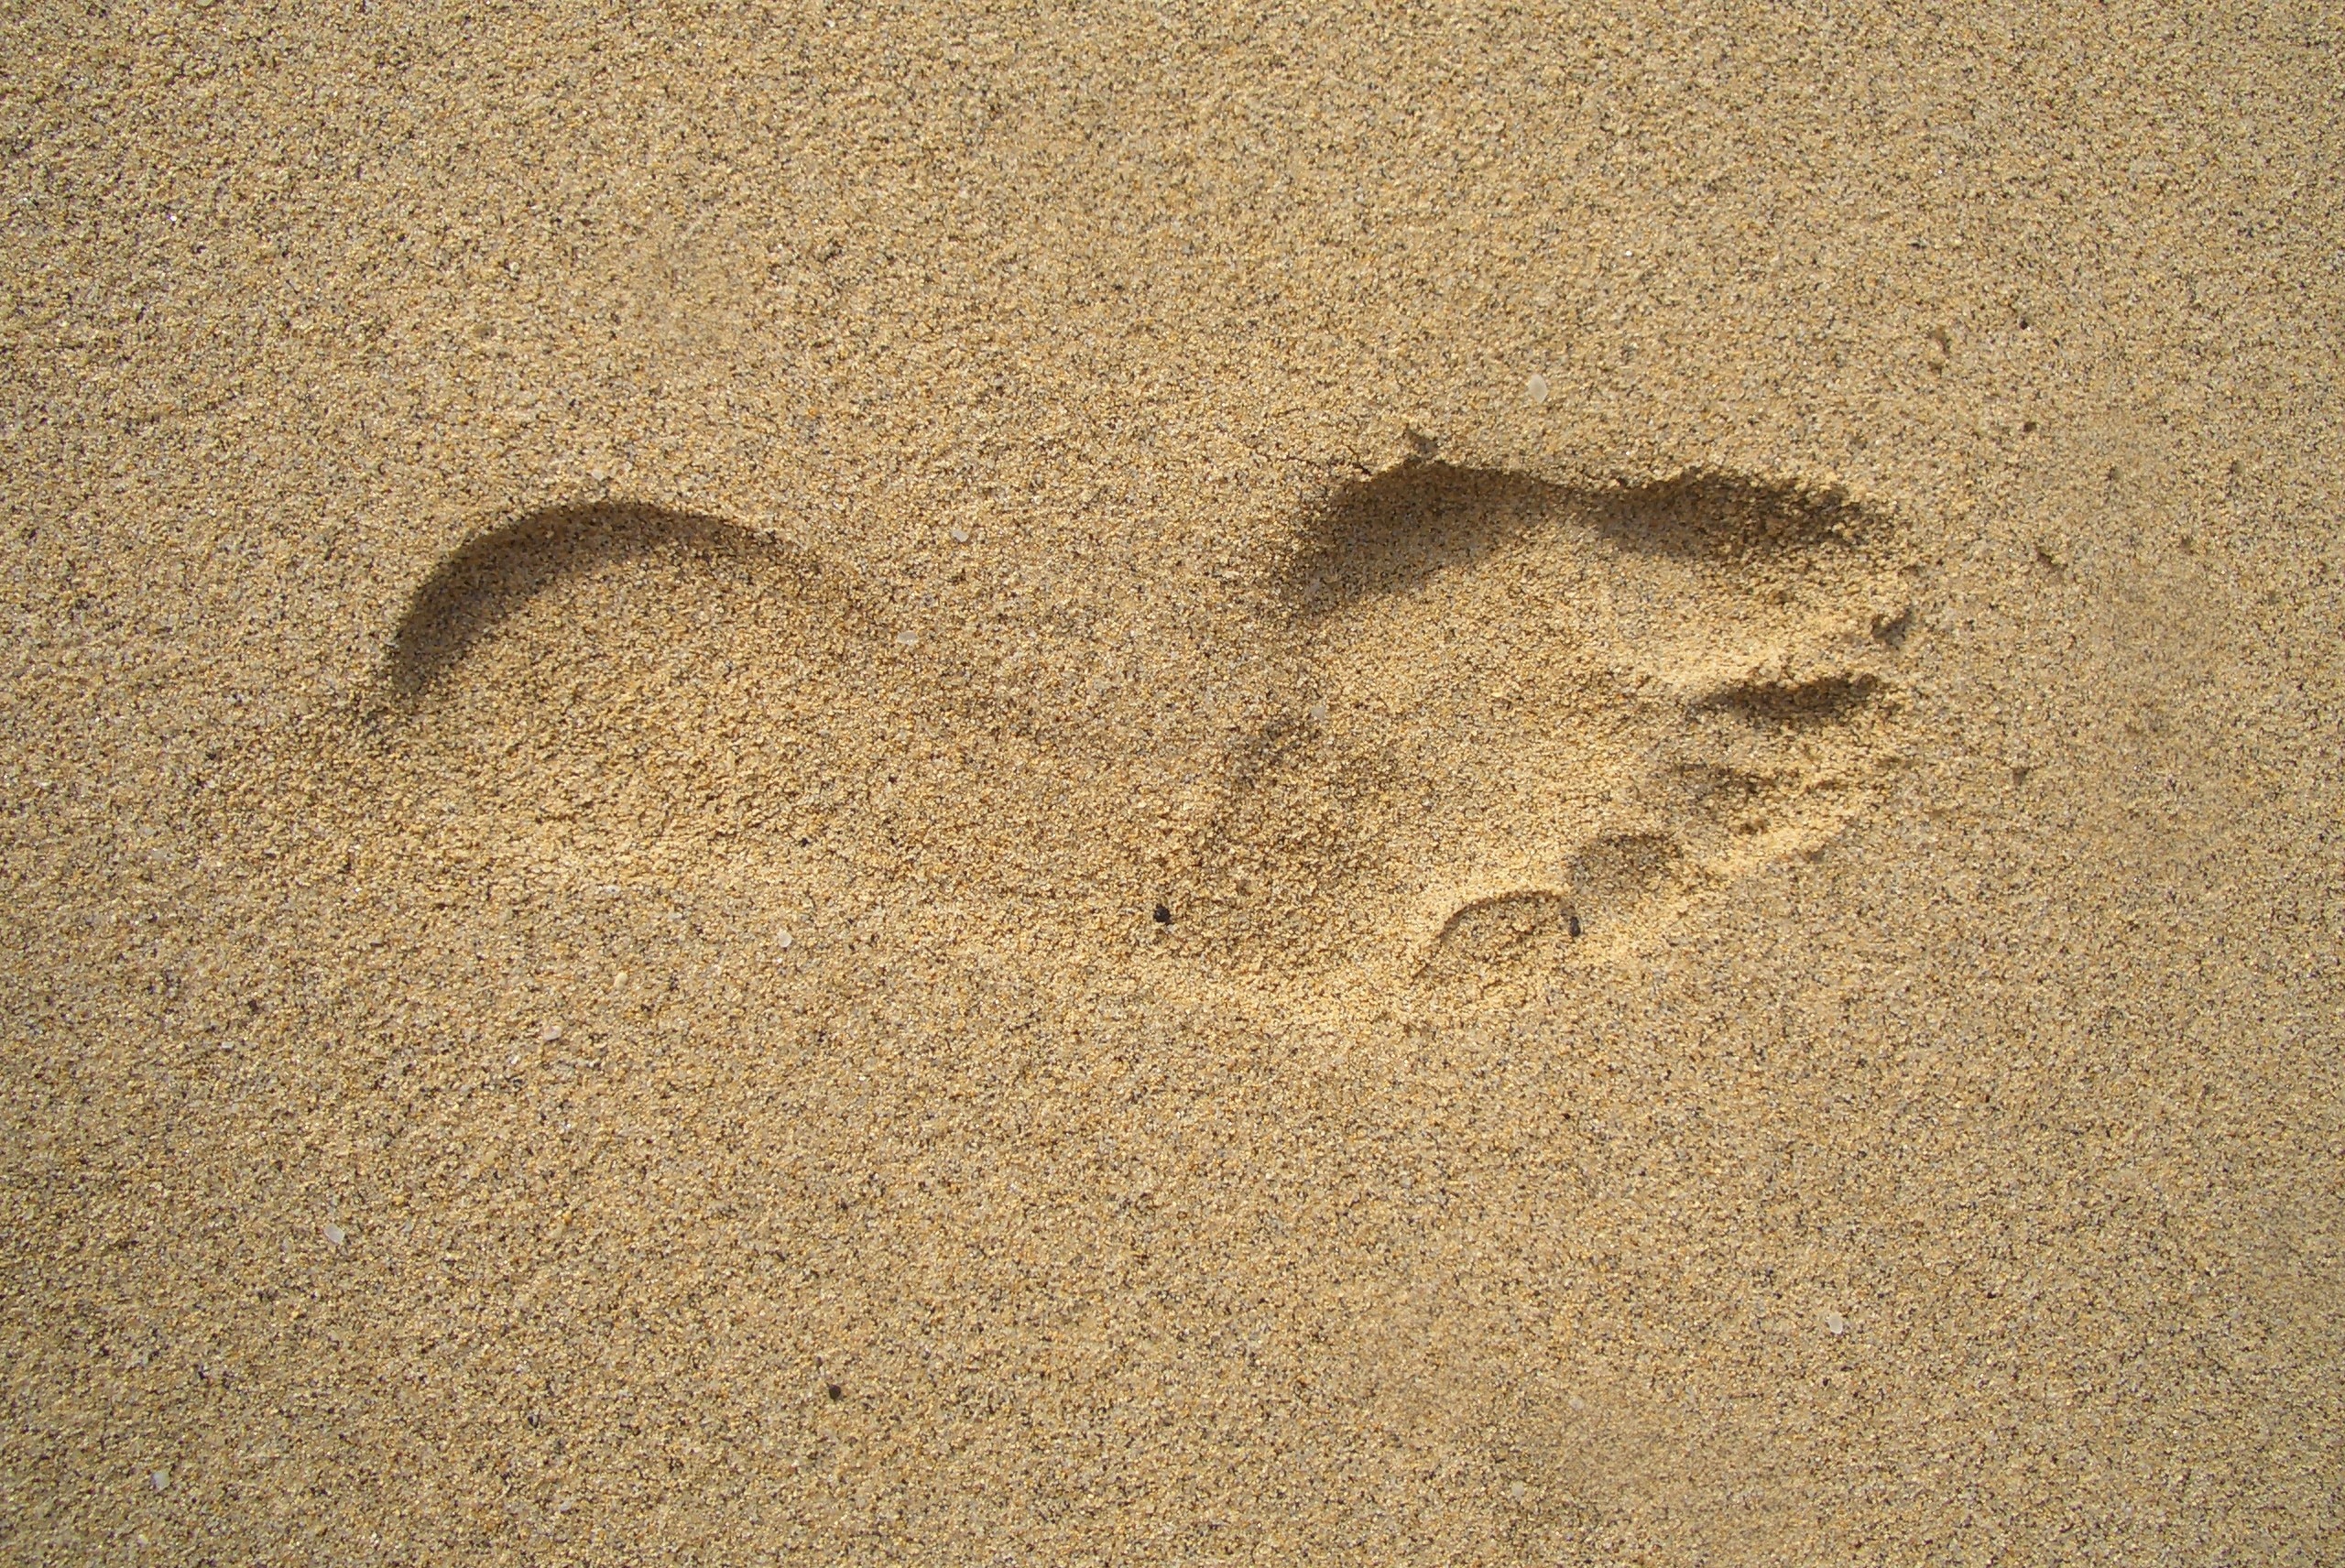 footprint on beige sand